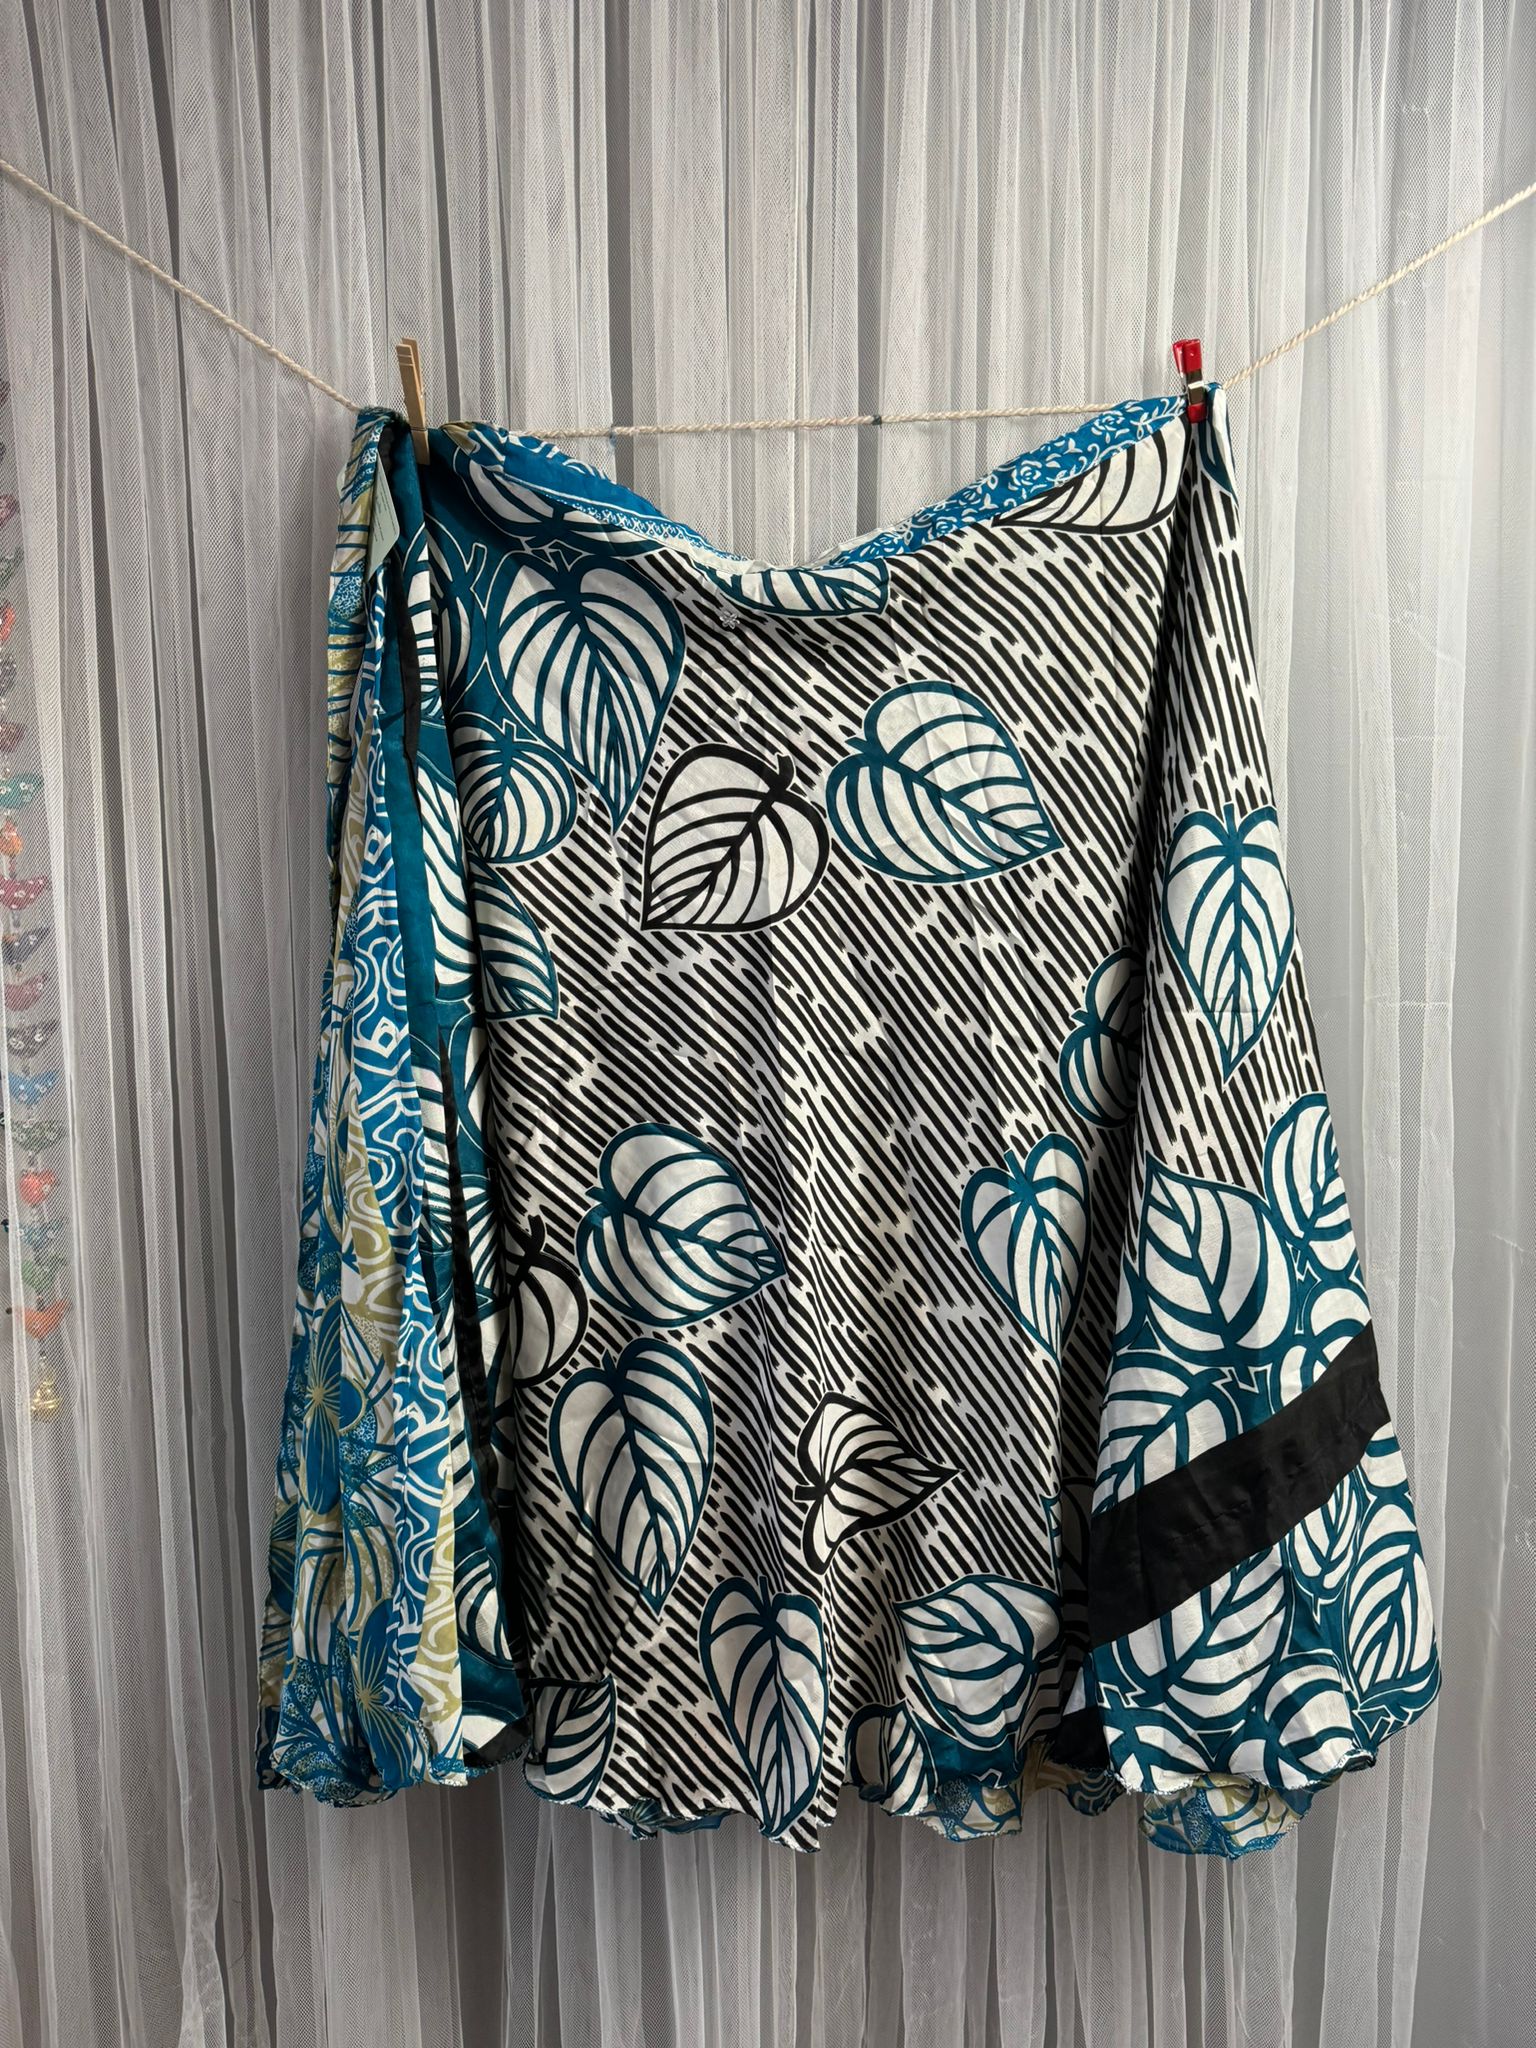 Festive Regular Ankle -FS001 - Rangeelaa- Fairtrade Sustainable Women's Clothingsaree wrap skirts